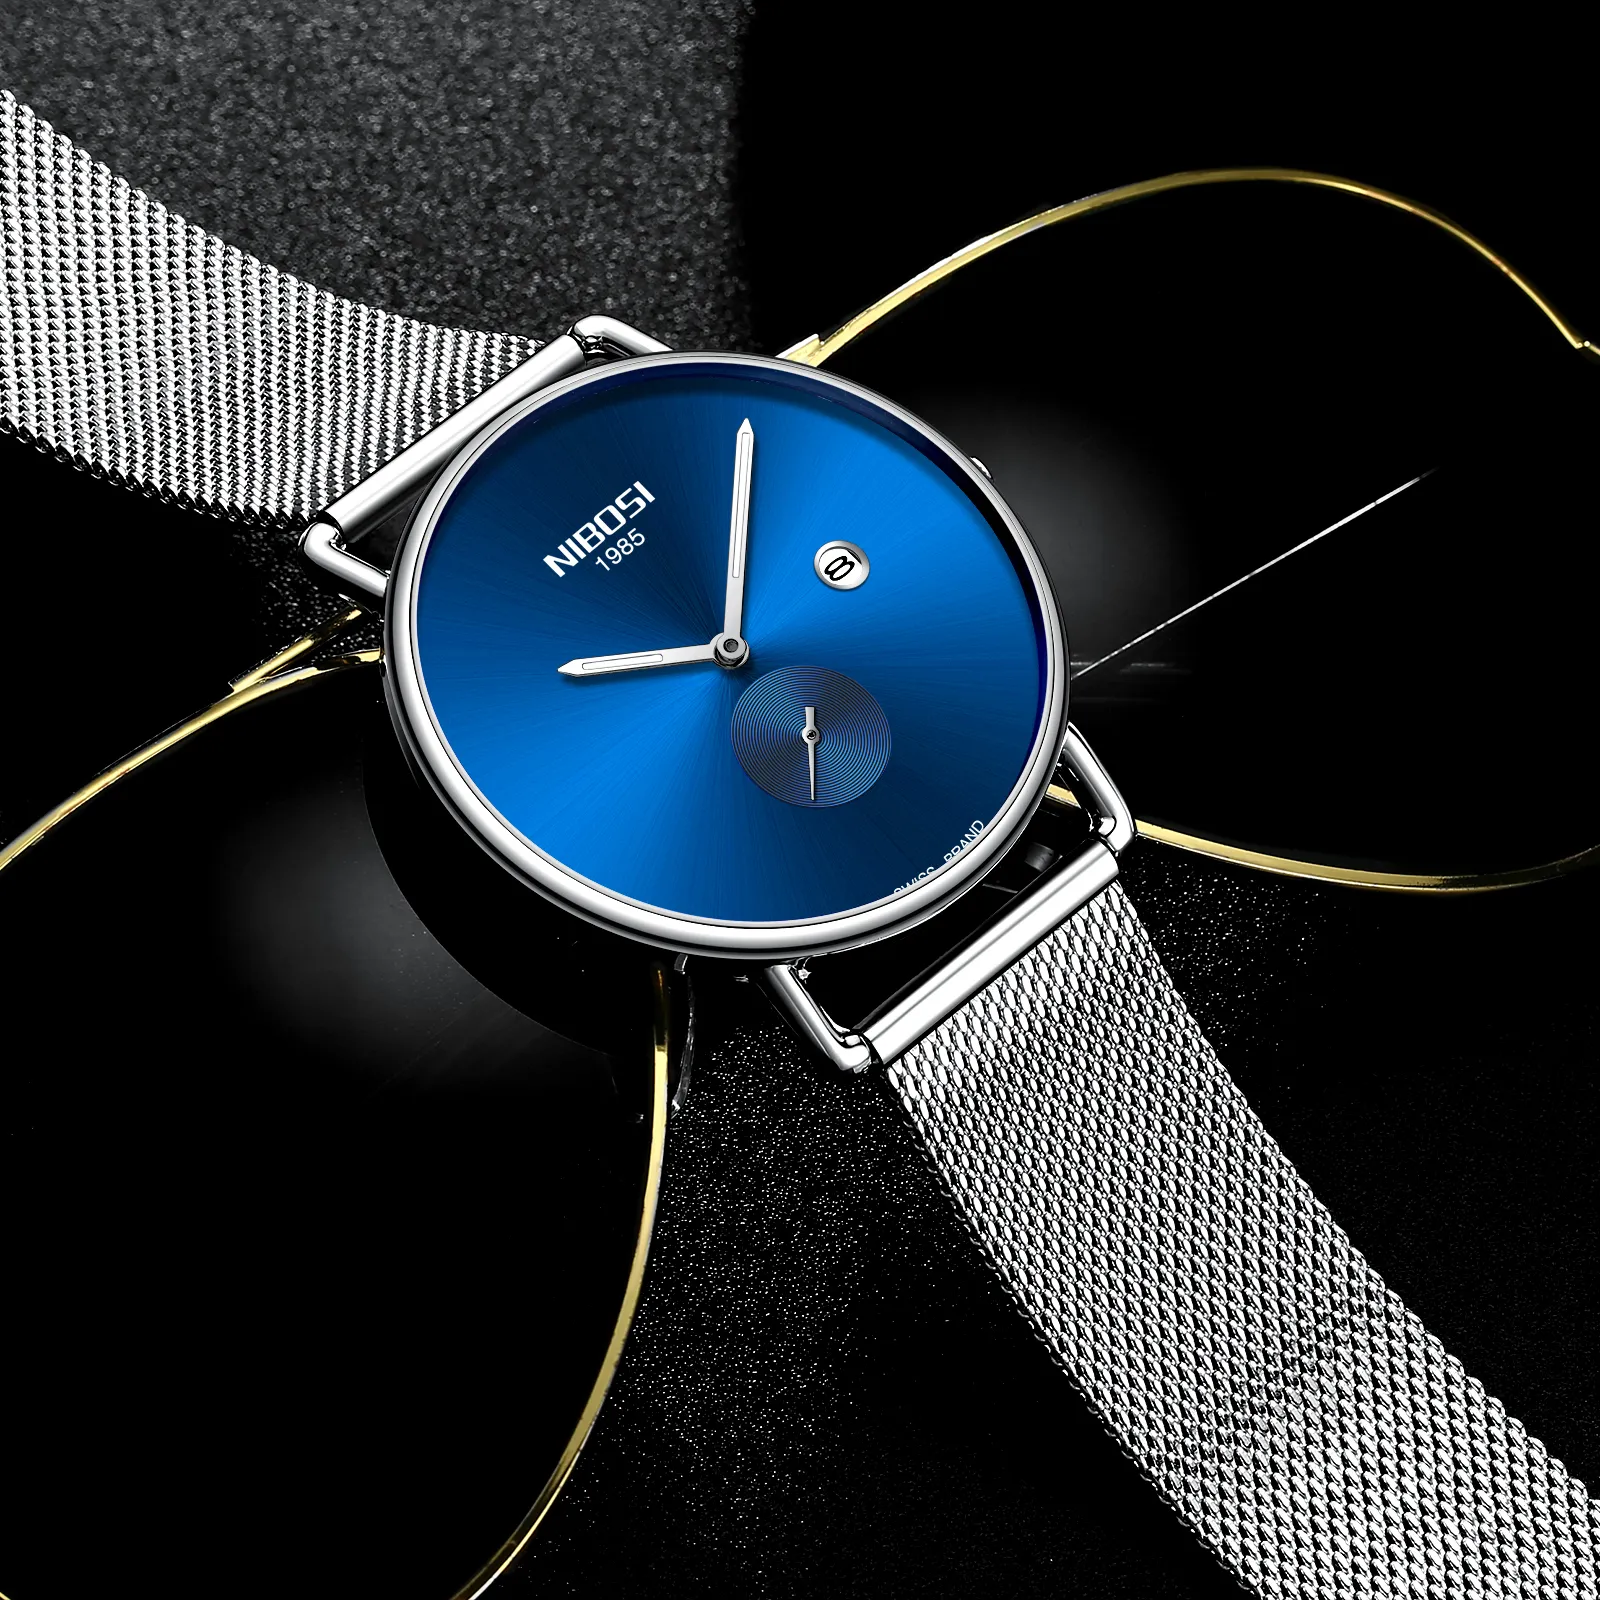 NIBOSI брендовые роскошные часы для влюбленных, водонепроницаемые мужские и женские часы для пар, кварцевые наручные часы, мужской женский браслет, Relogio Masculino278u